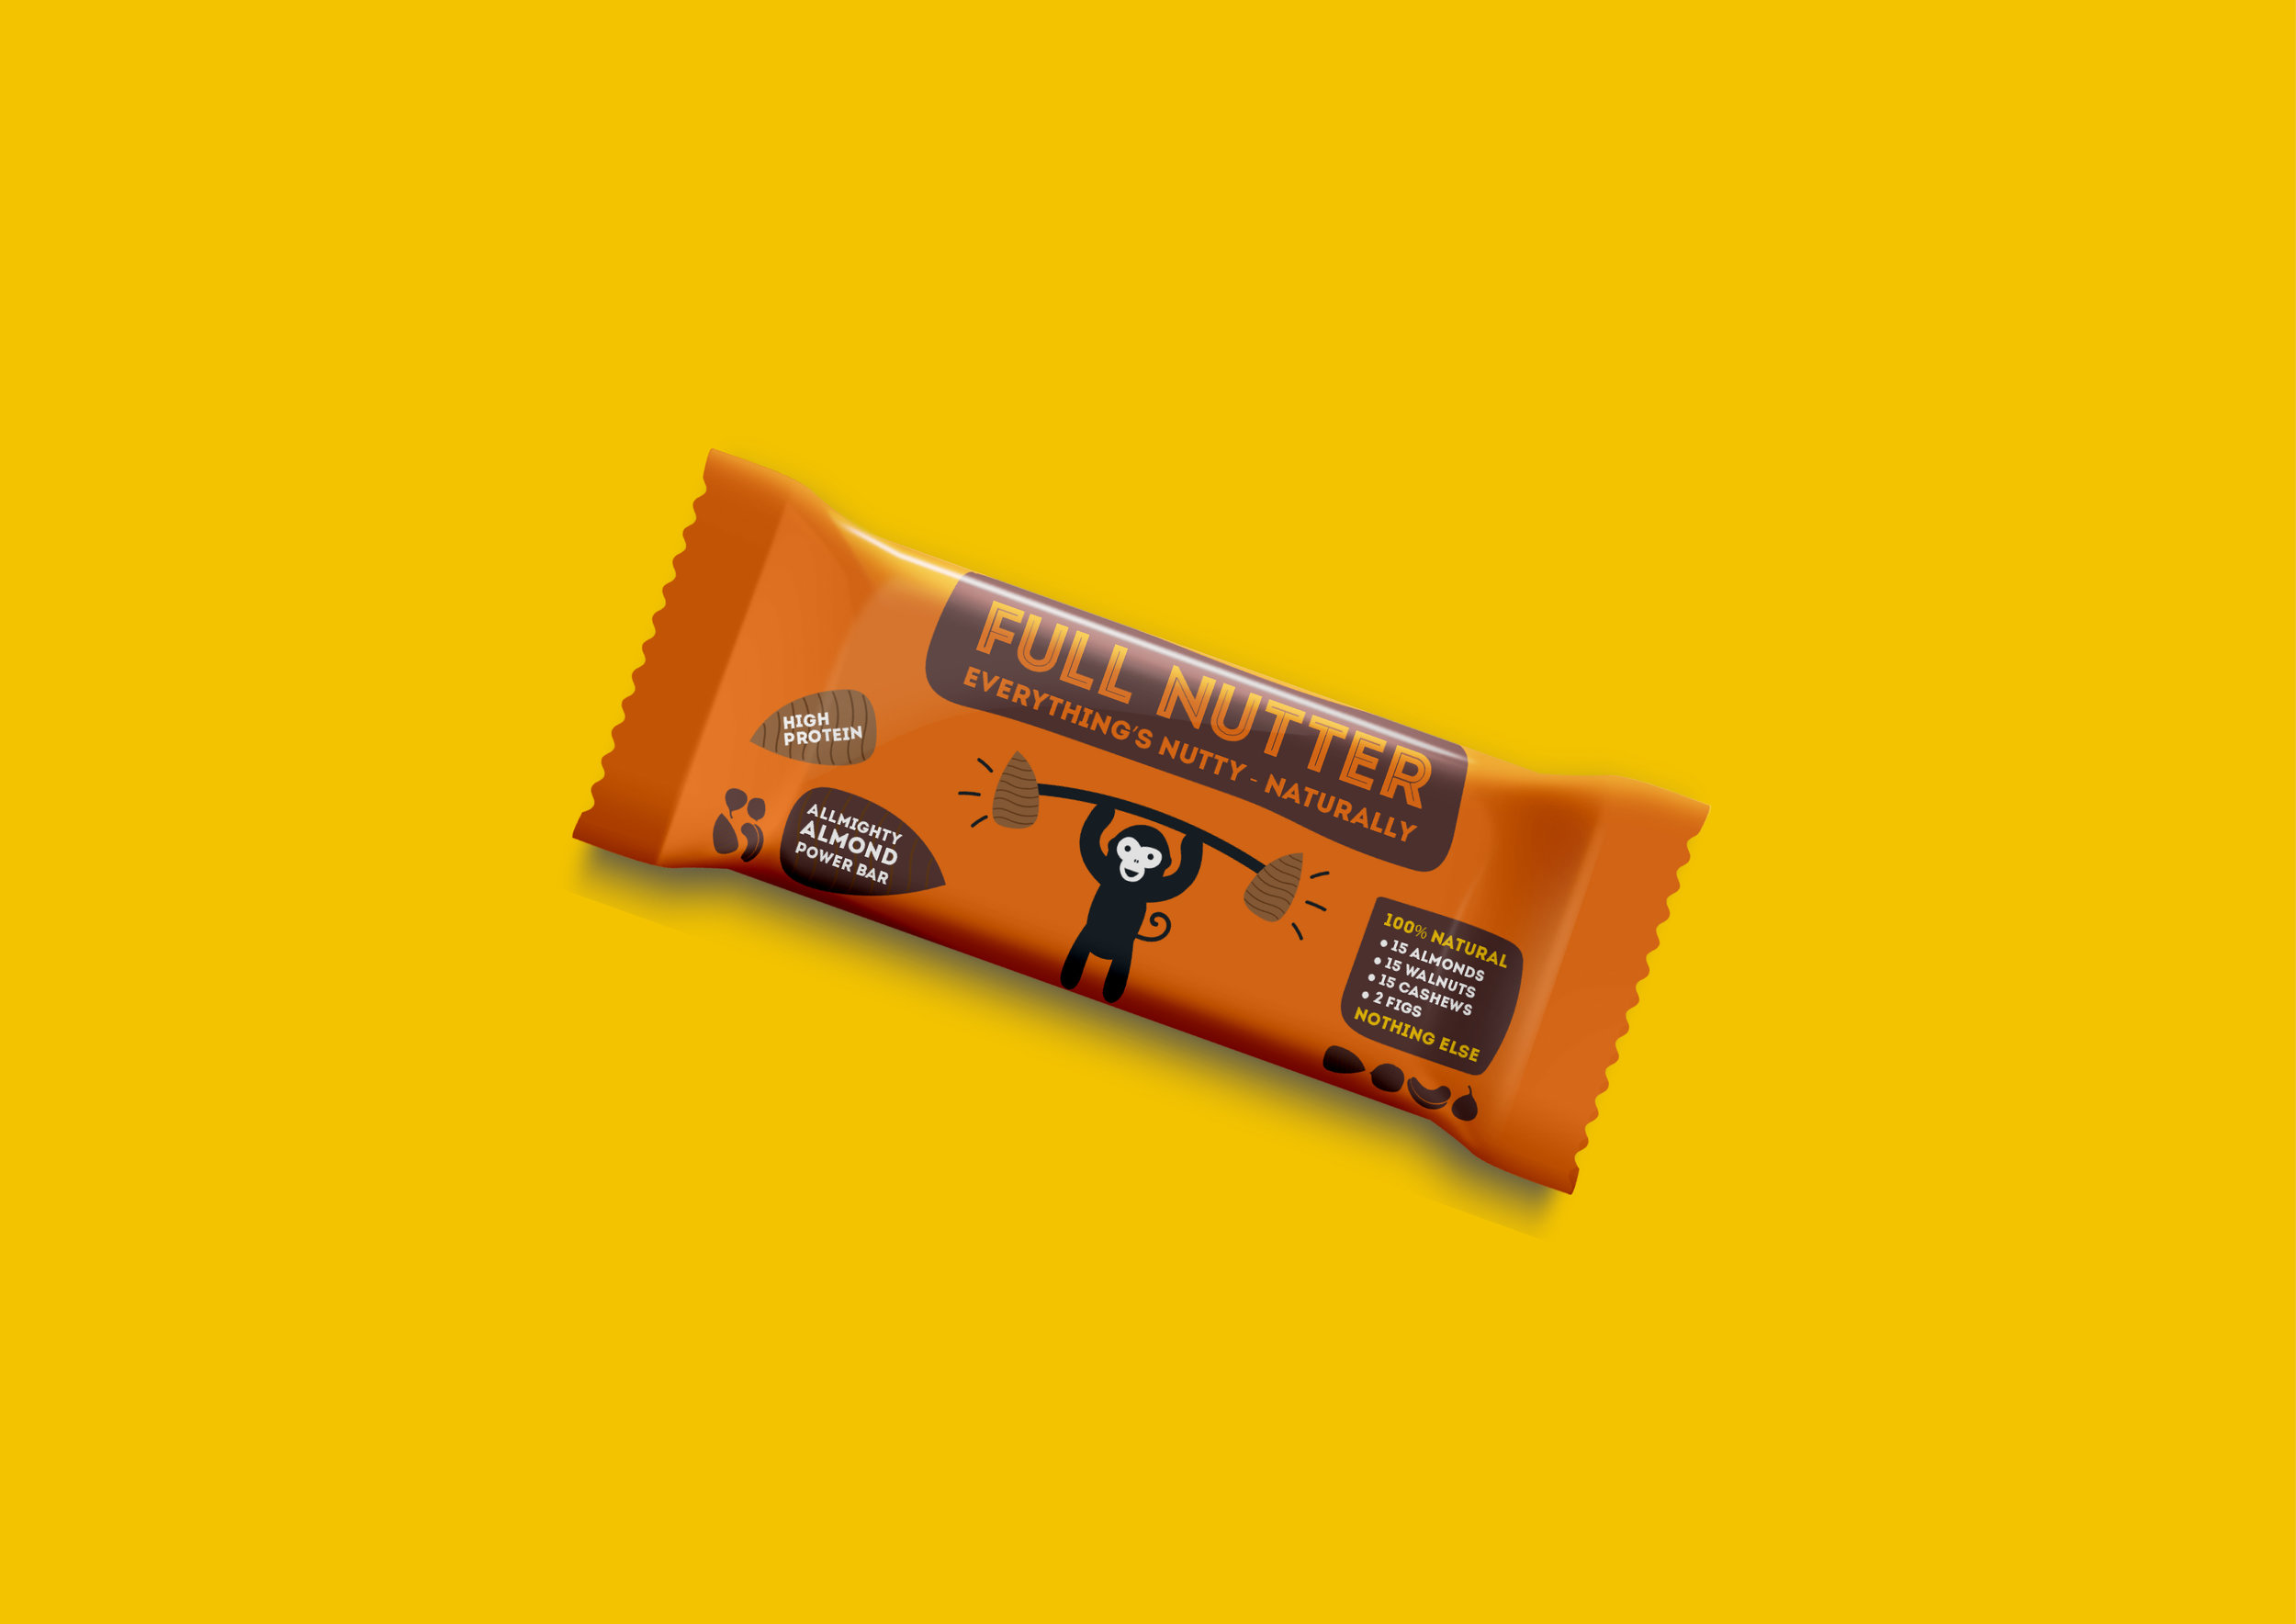 Packaging Designer UK Packaging design of a orange Full Nutter energy bar